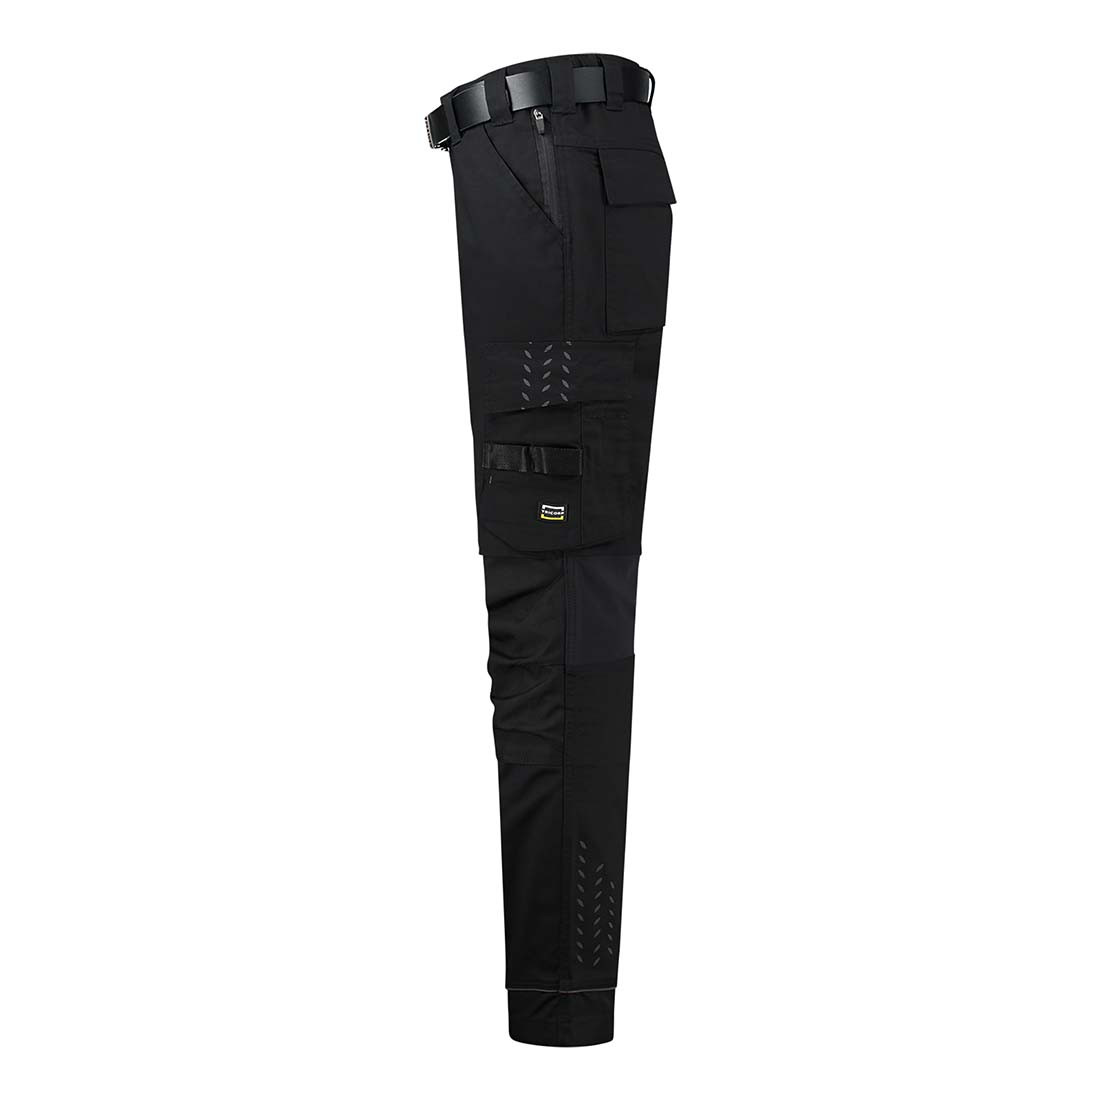 Pantaloni de lucru elastici unisex - Imbracaminte de protectie